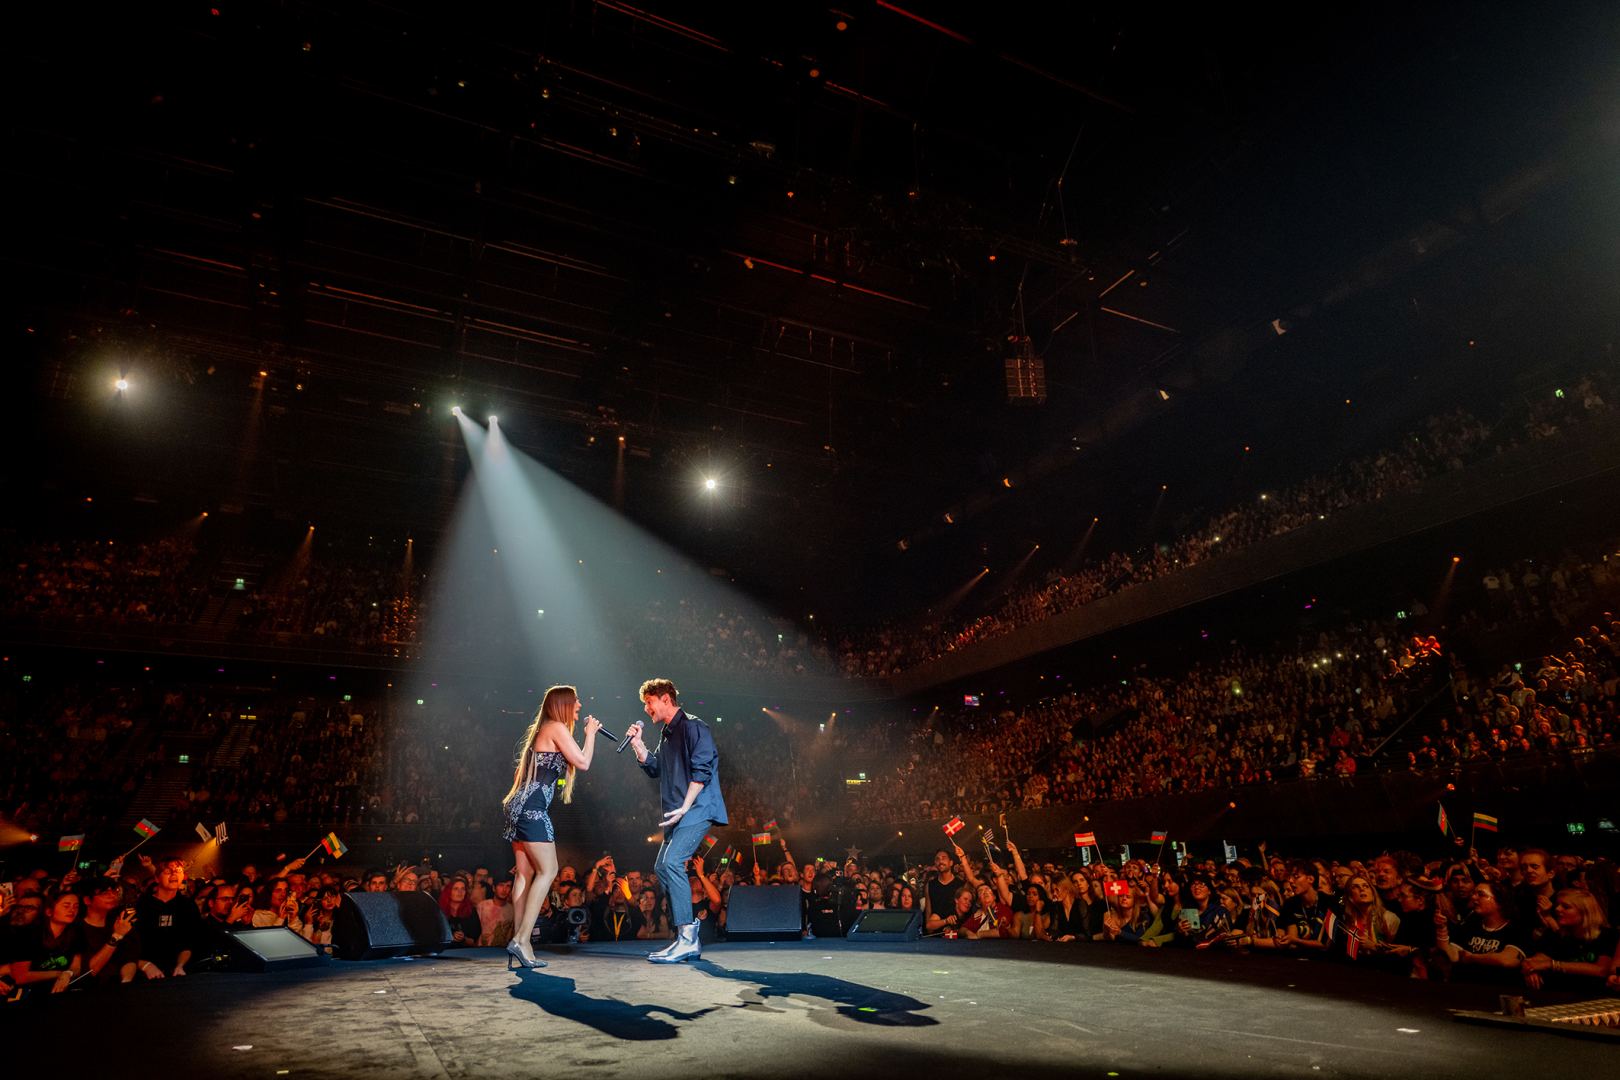 В Амстердаме прошел концерт звезд "Евровидения" с участием Нигяр Джамал и Эльдара Гасымова (ФОТО)